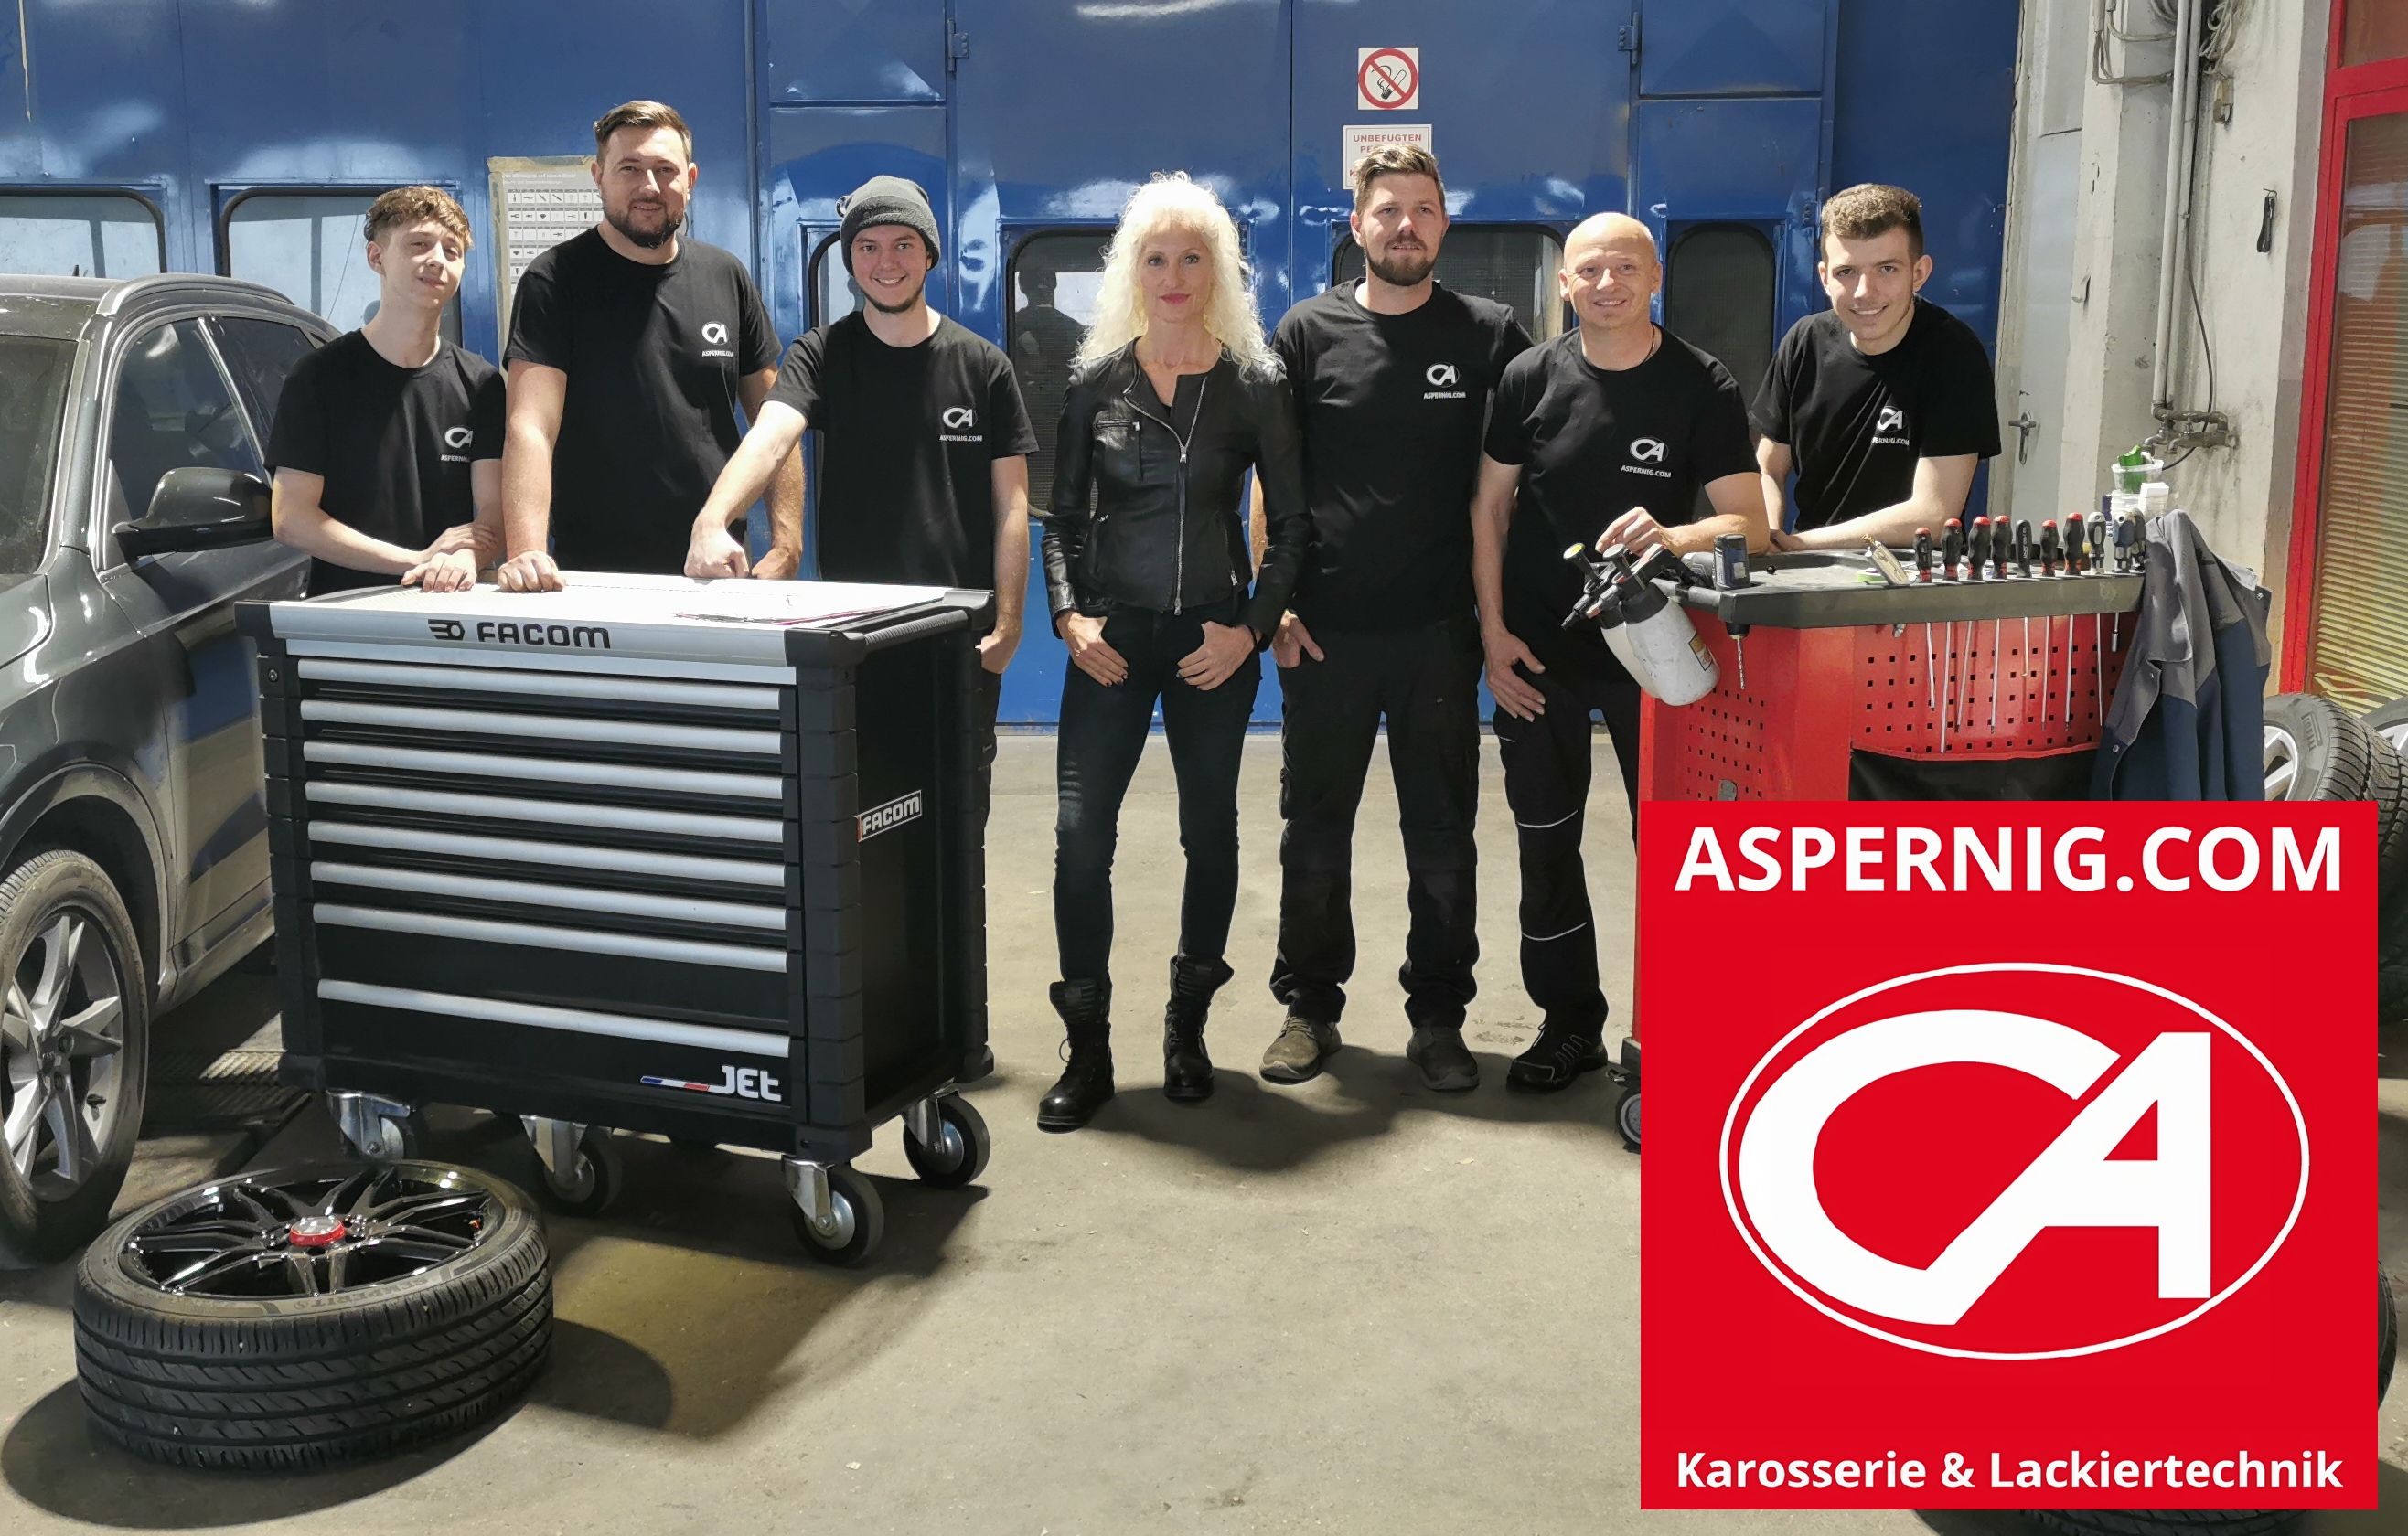 Aspernig Karosserietechnik GmbH